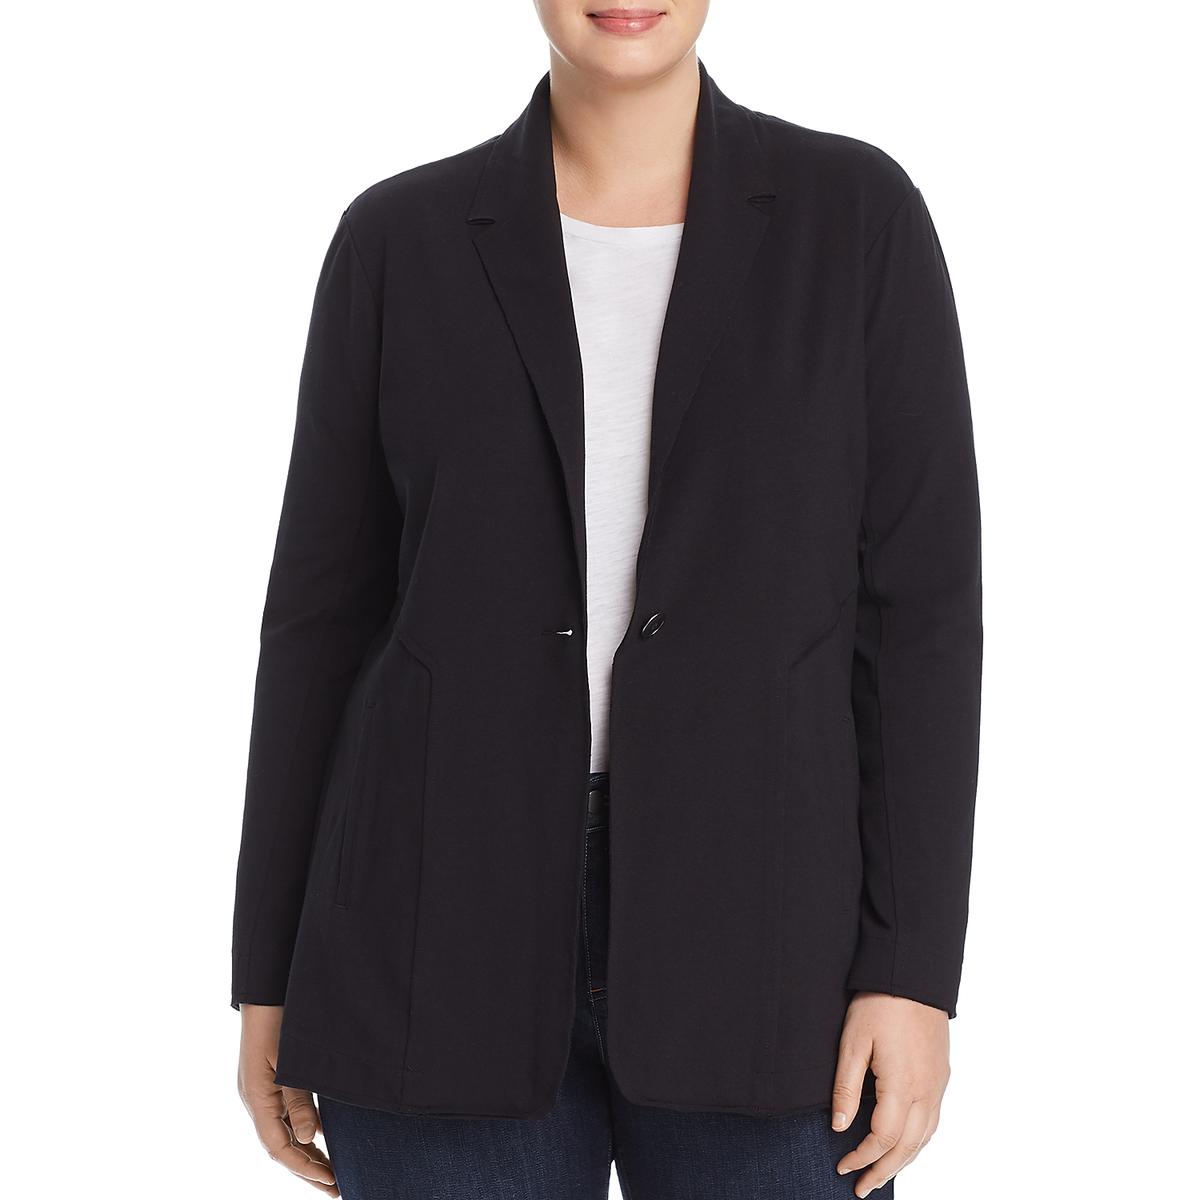 Nic + Zoe Womens Black Knit Seamed One-Button Blazer Jacket Plus 3X ...